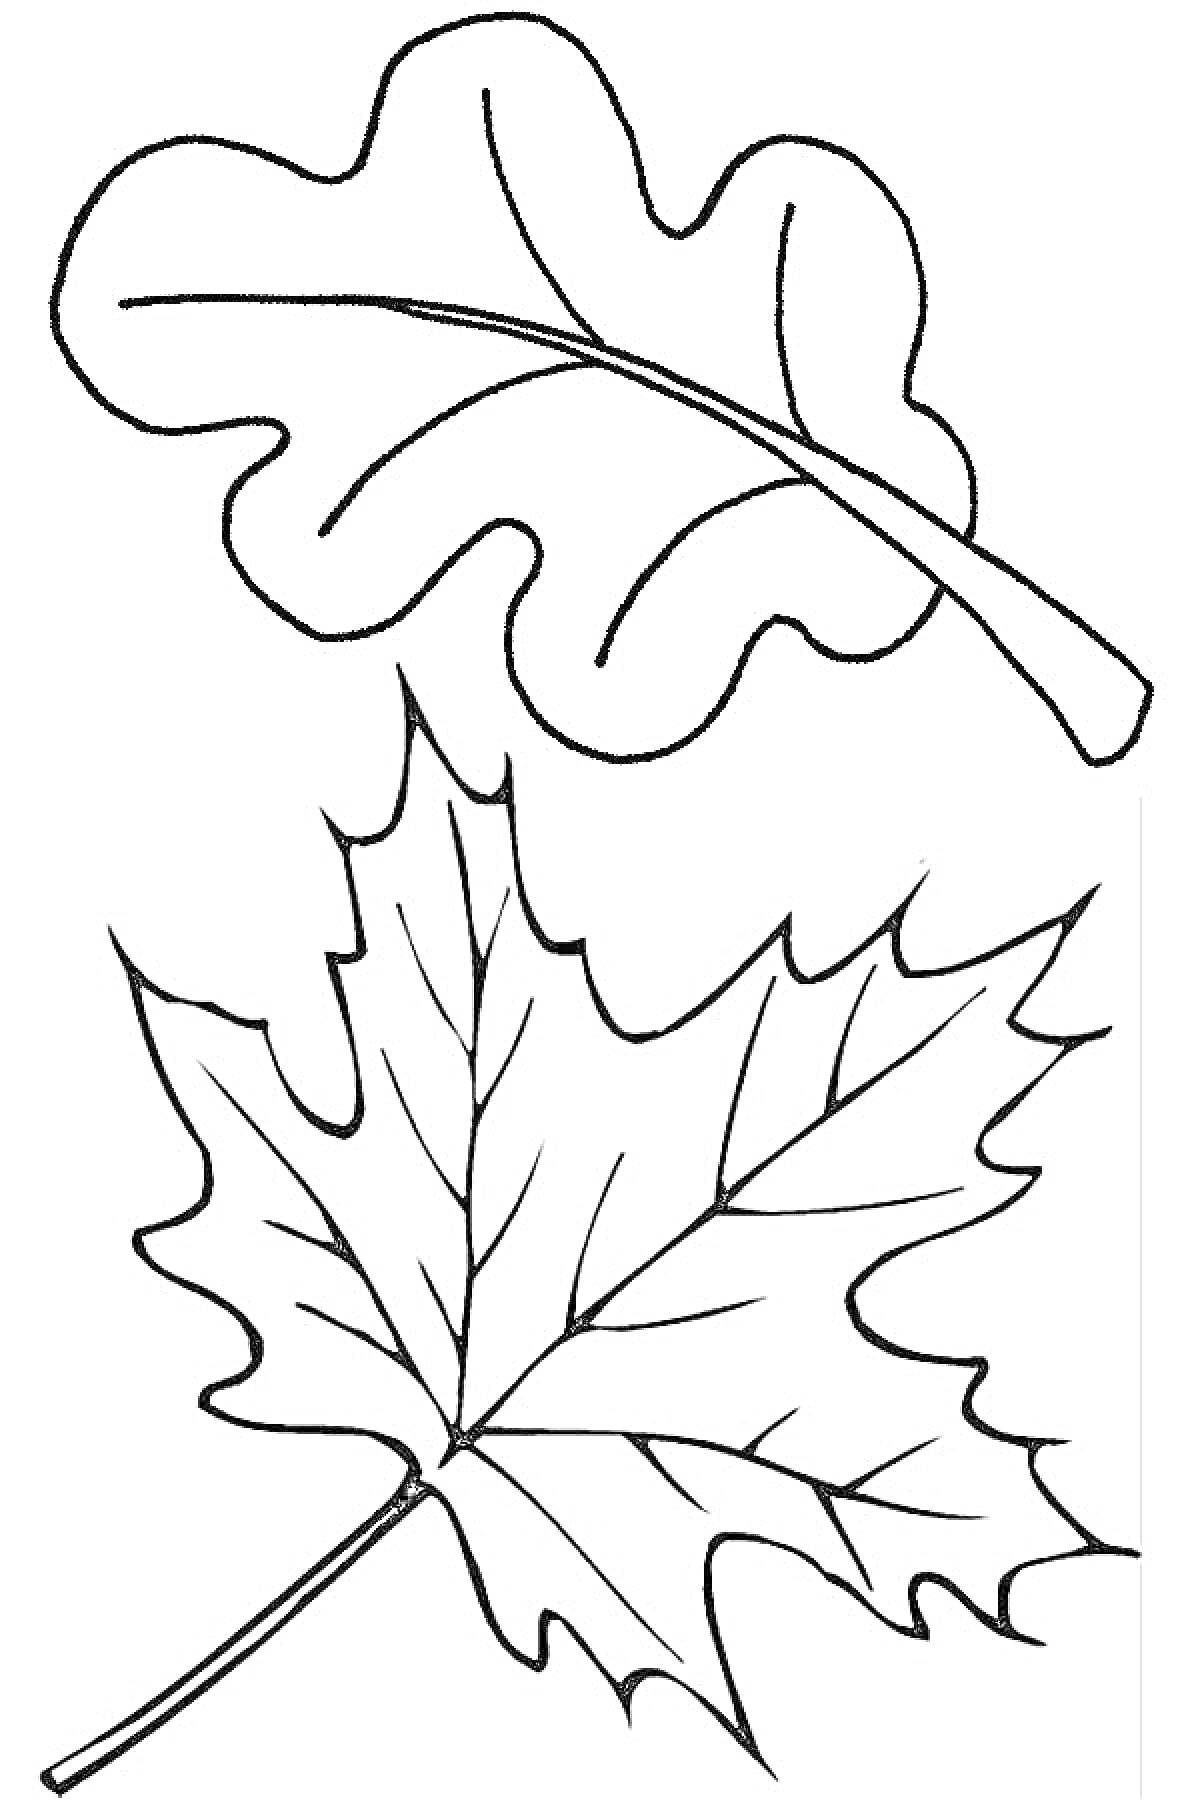 Контурные рисунки листьев дуба и клена